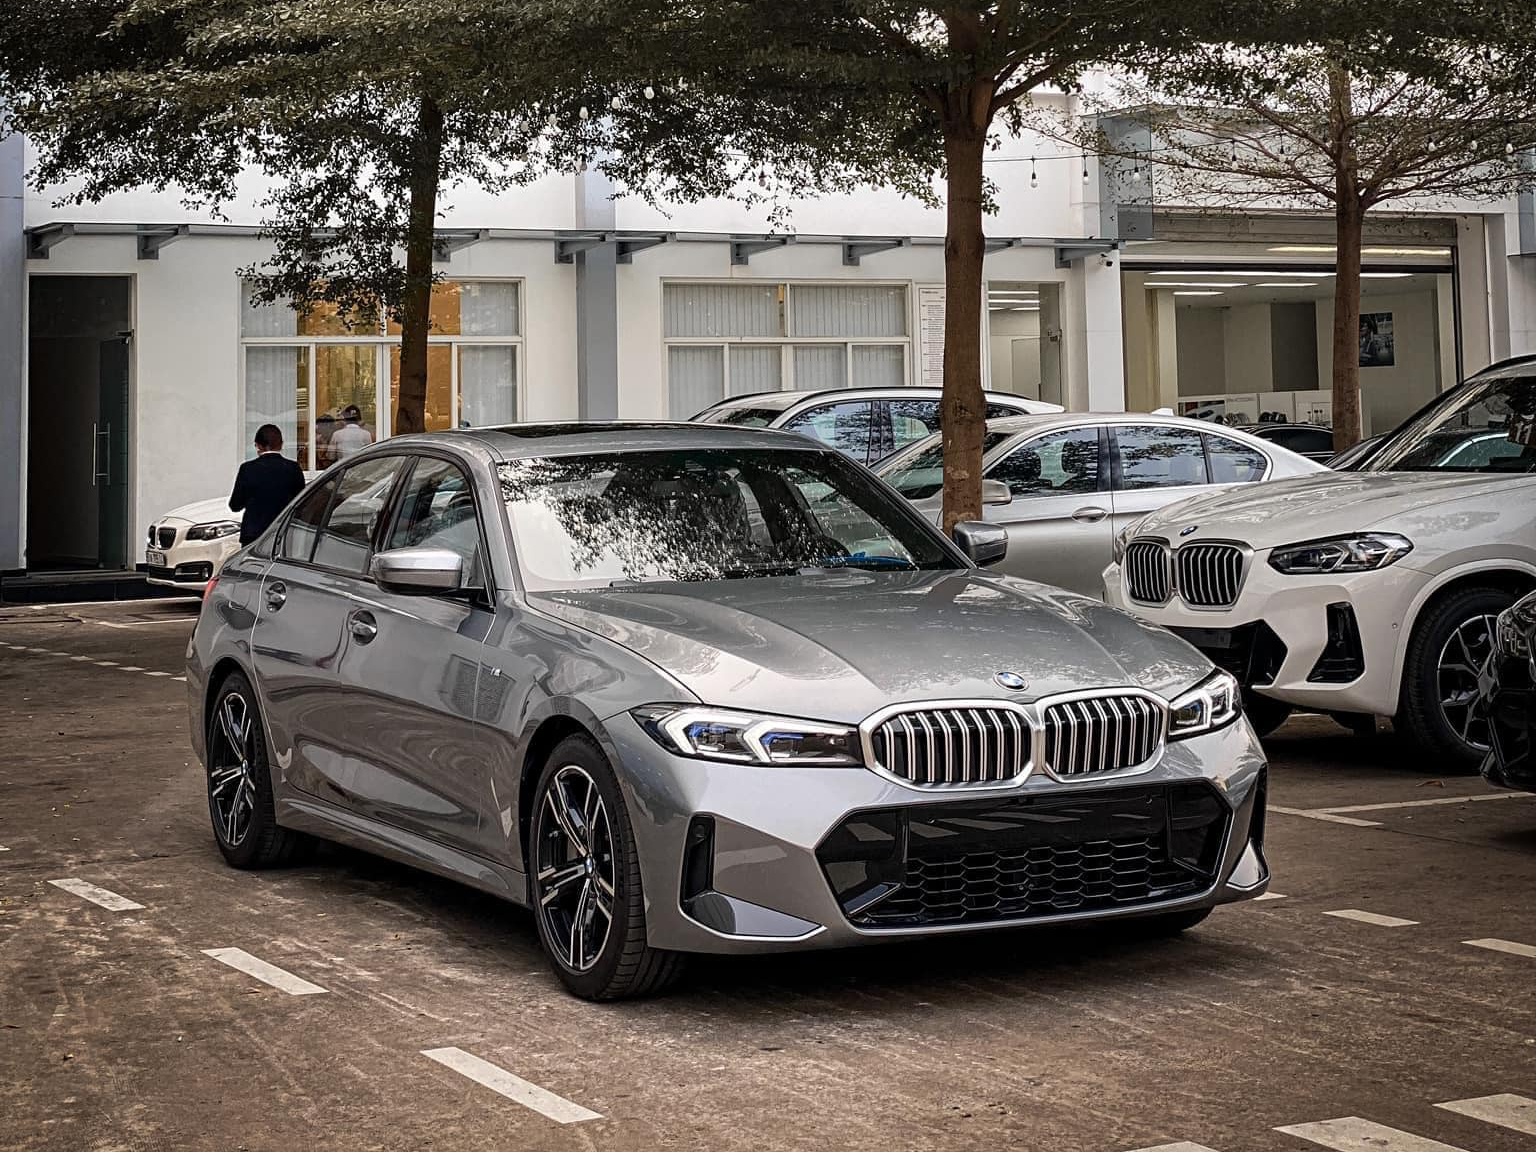 BMW 3-Series 'giá rẻ' cho Bimmer Việt: Giảm kỷ lục còn 1,299 tỷ đồng, ngang Camry 2.0 nhưng phải đánh đổi mẫu mã - Ảnh 7.